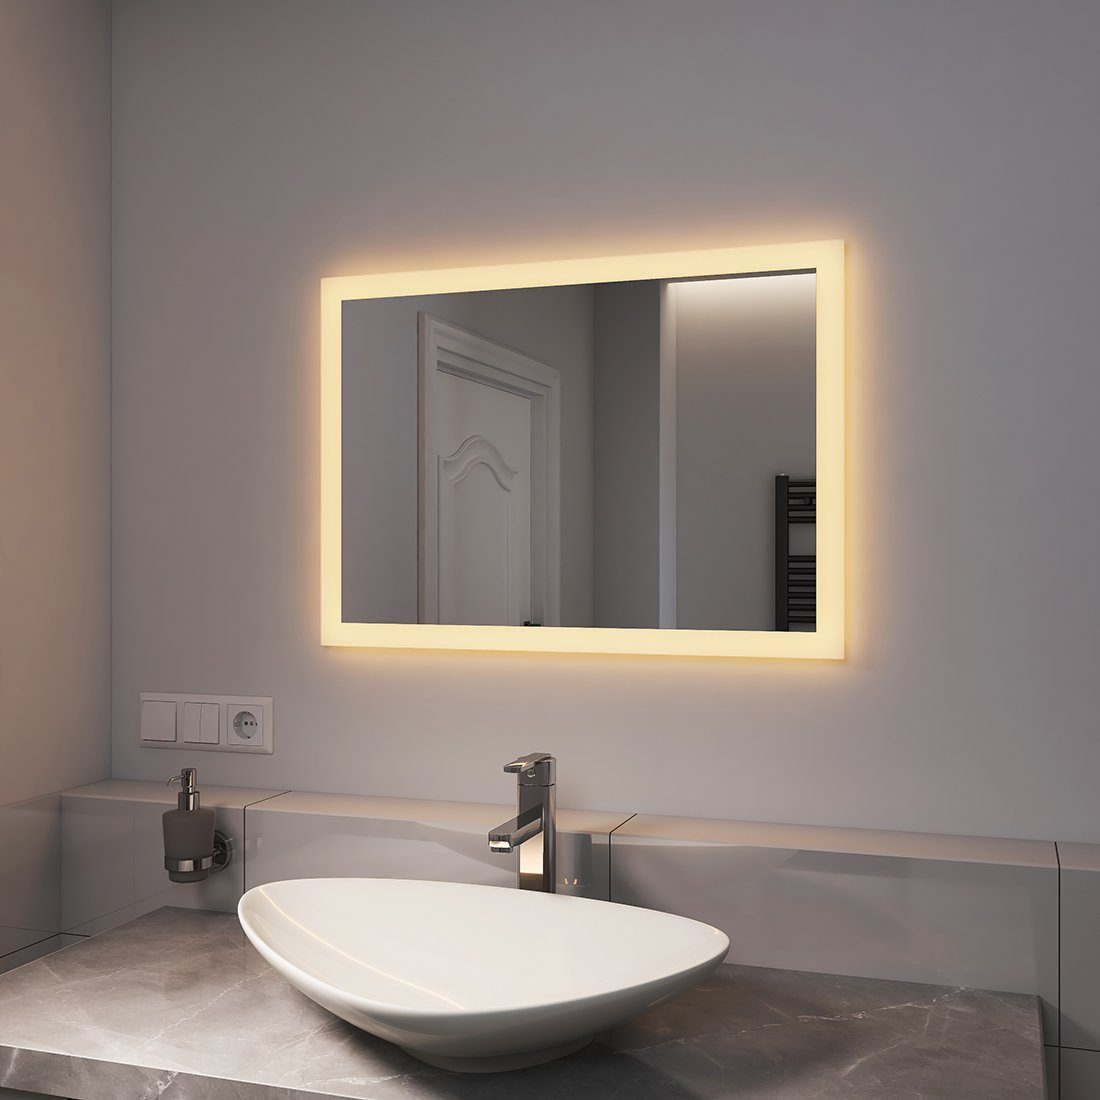 EMKE Badspiegel Badezimmerspiegel LED Badspiegel mit beleuchtung Wandspiegel, mit Warmweißer 3000K und Wandschalter